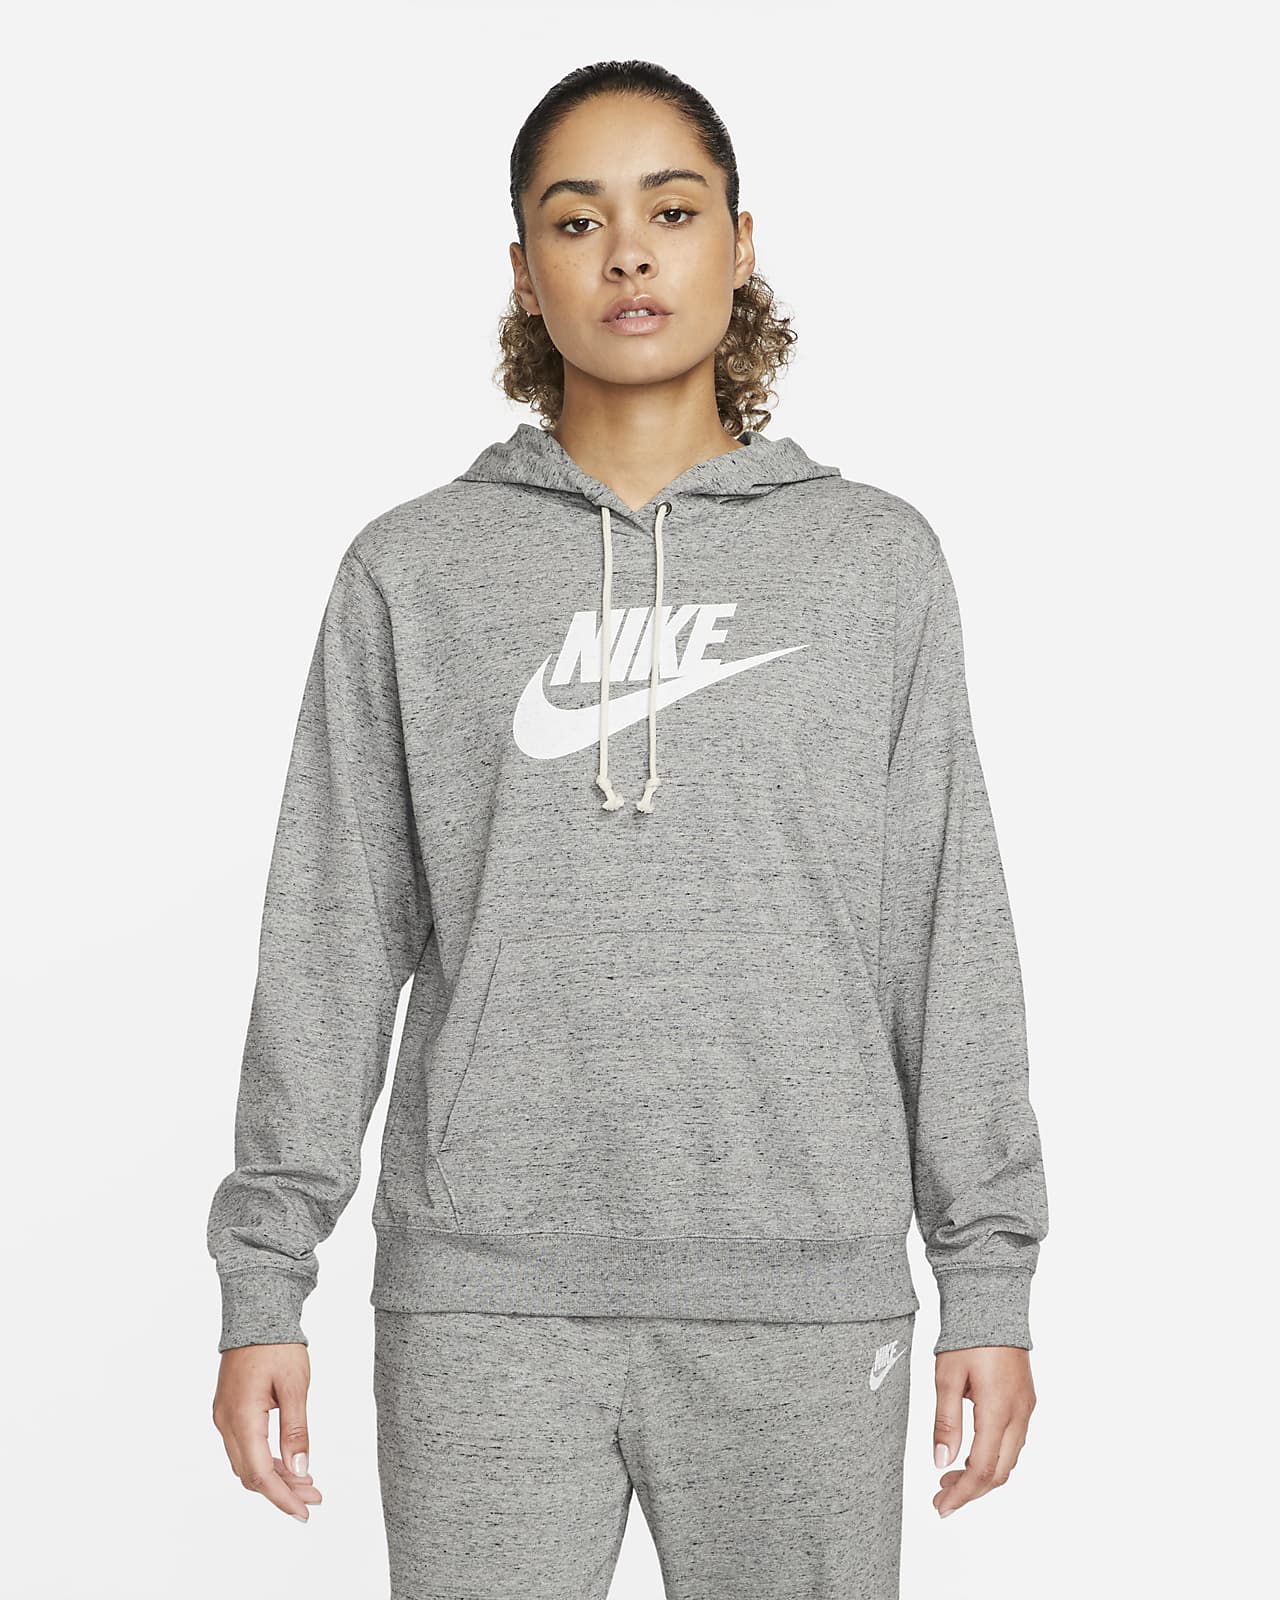 Nike Sportswear Gym Women's Pullover Hoodie.